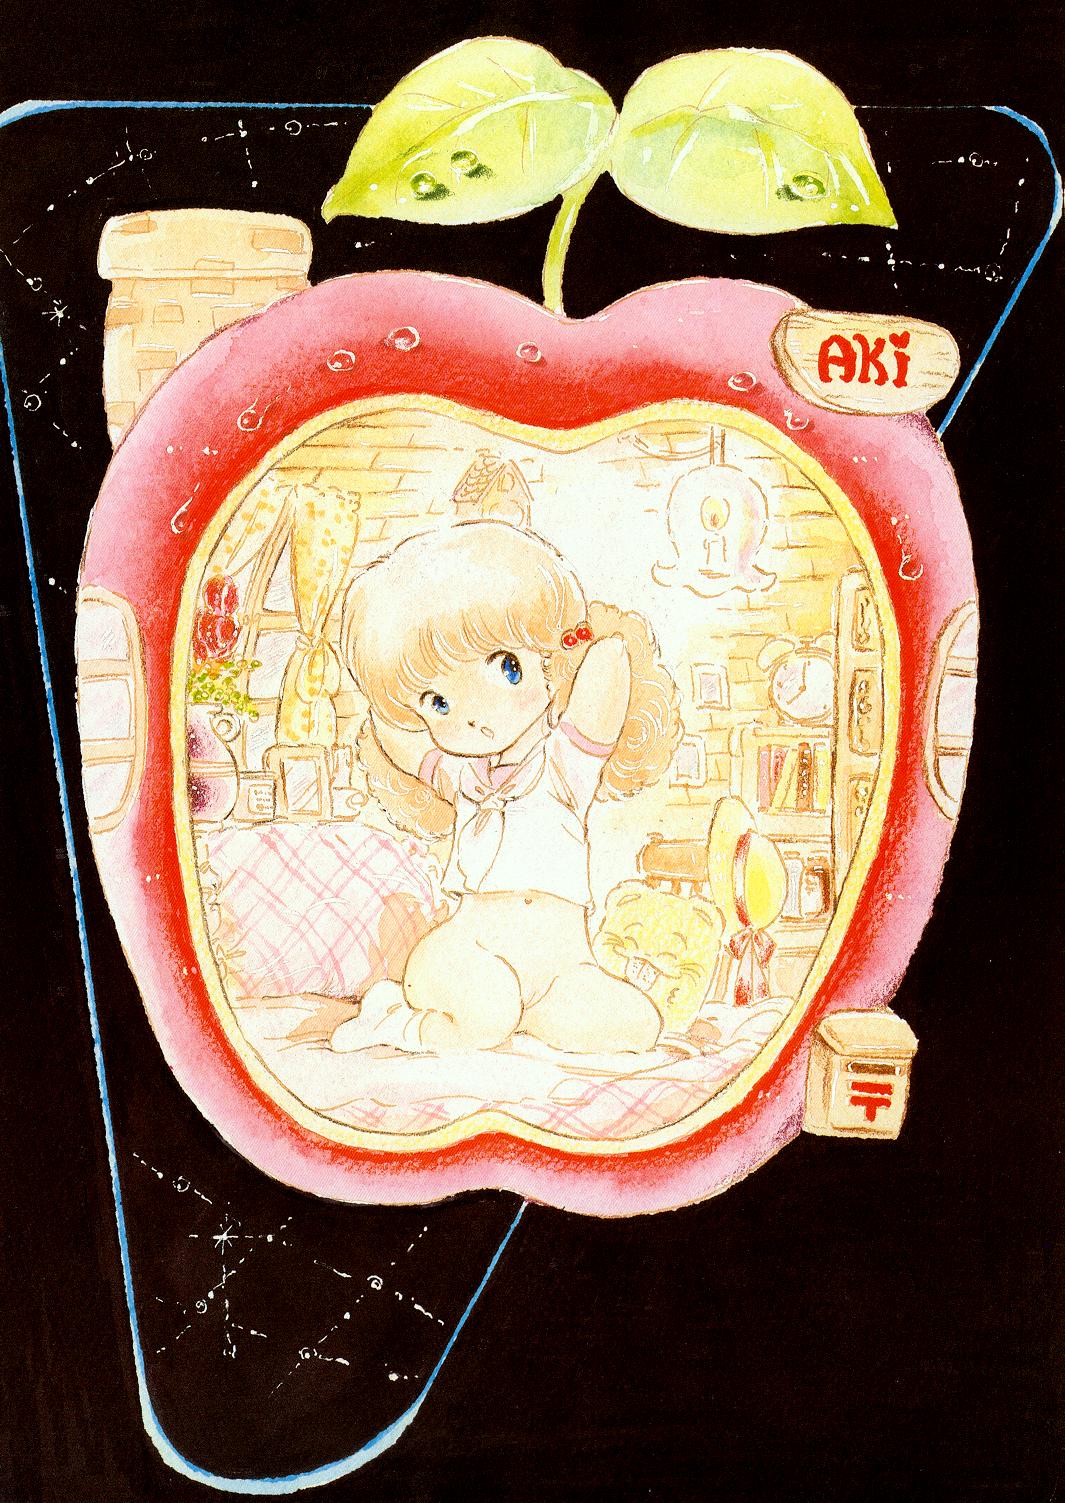 レモンピープル 1985年2月増刊号 Vol.38 Best Collection